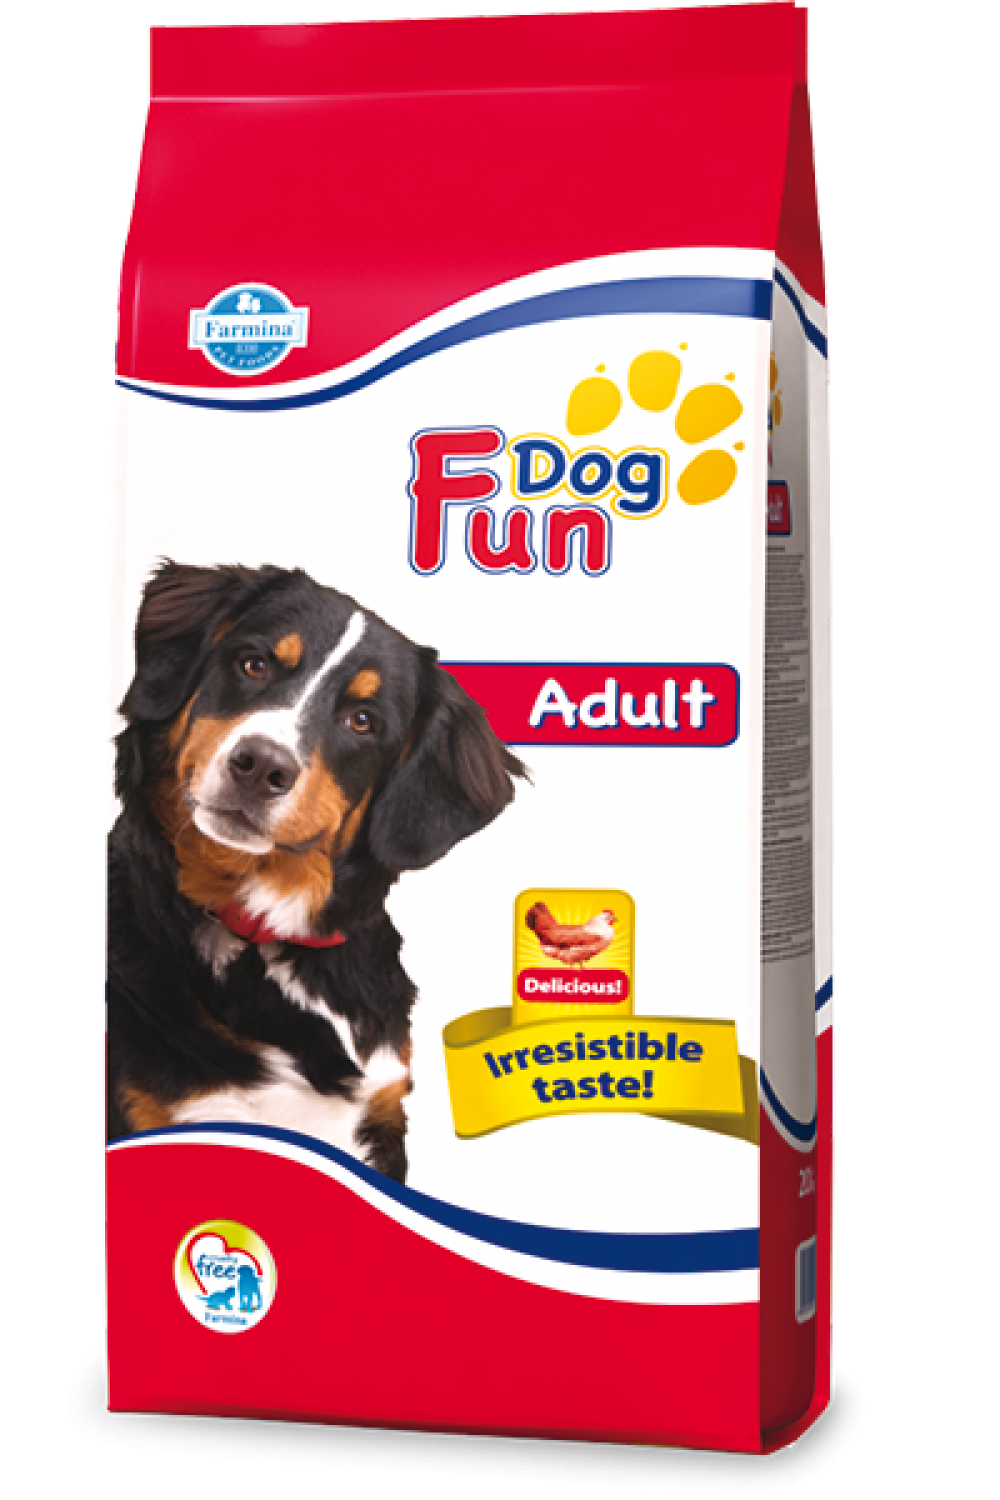 Fan Dog Adult 20kg Farmina